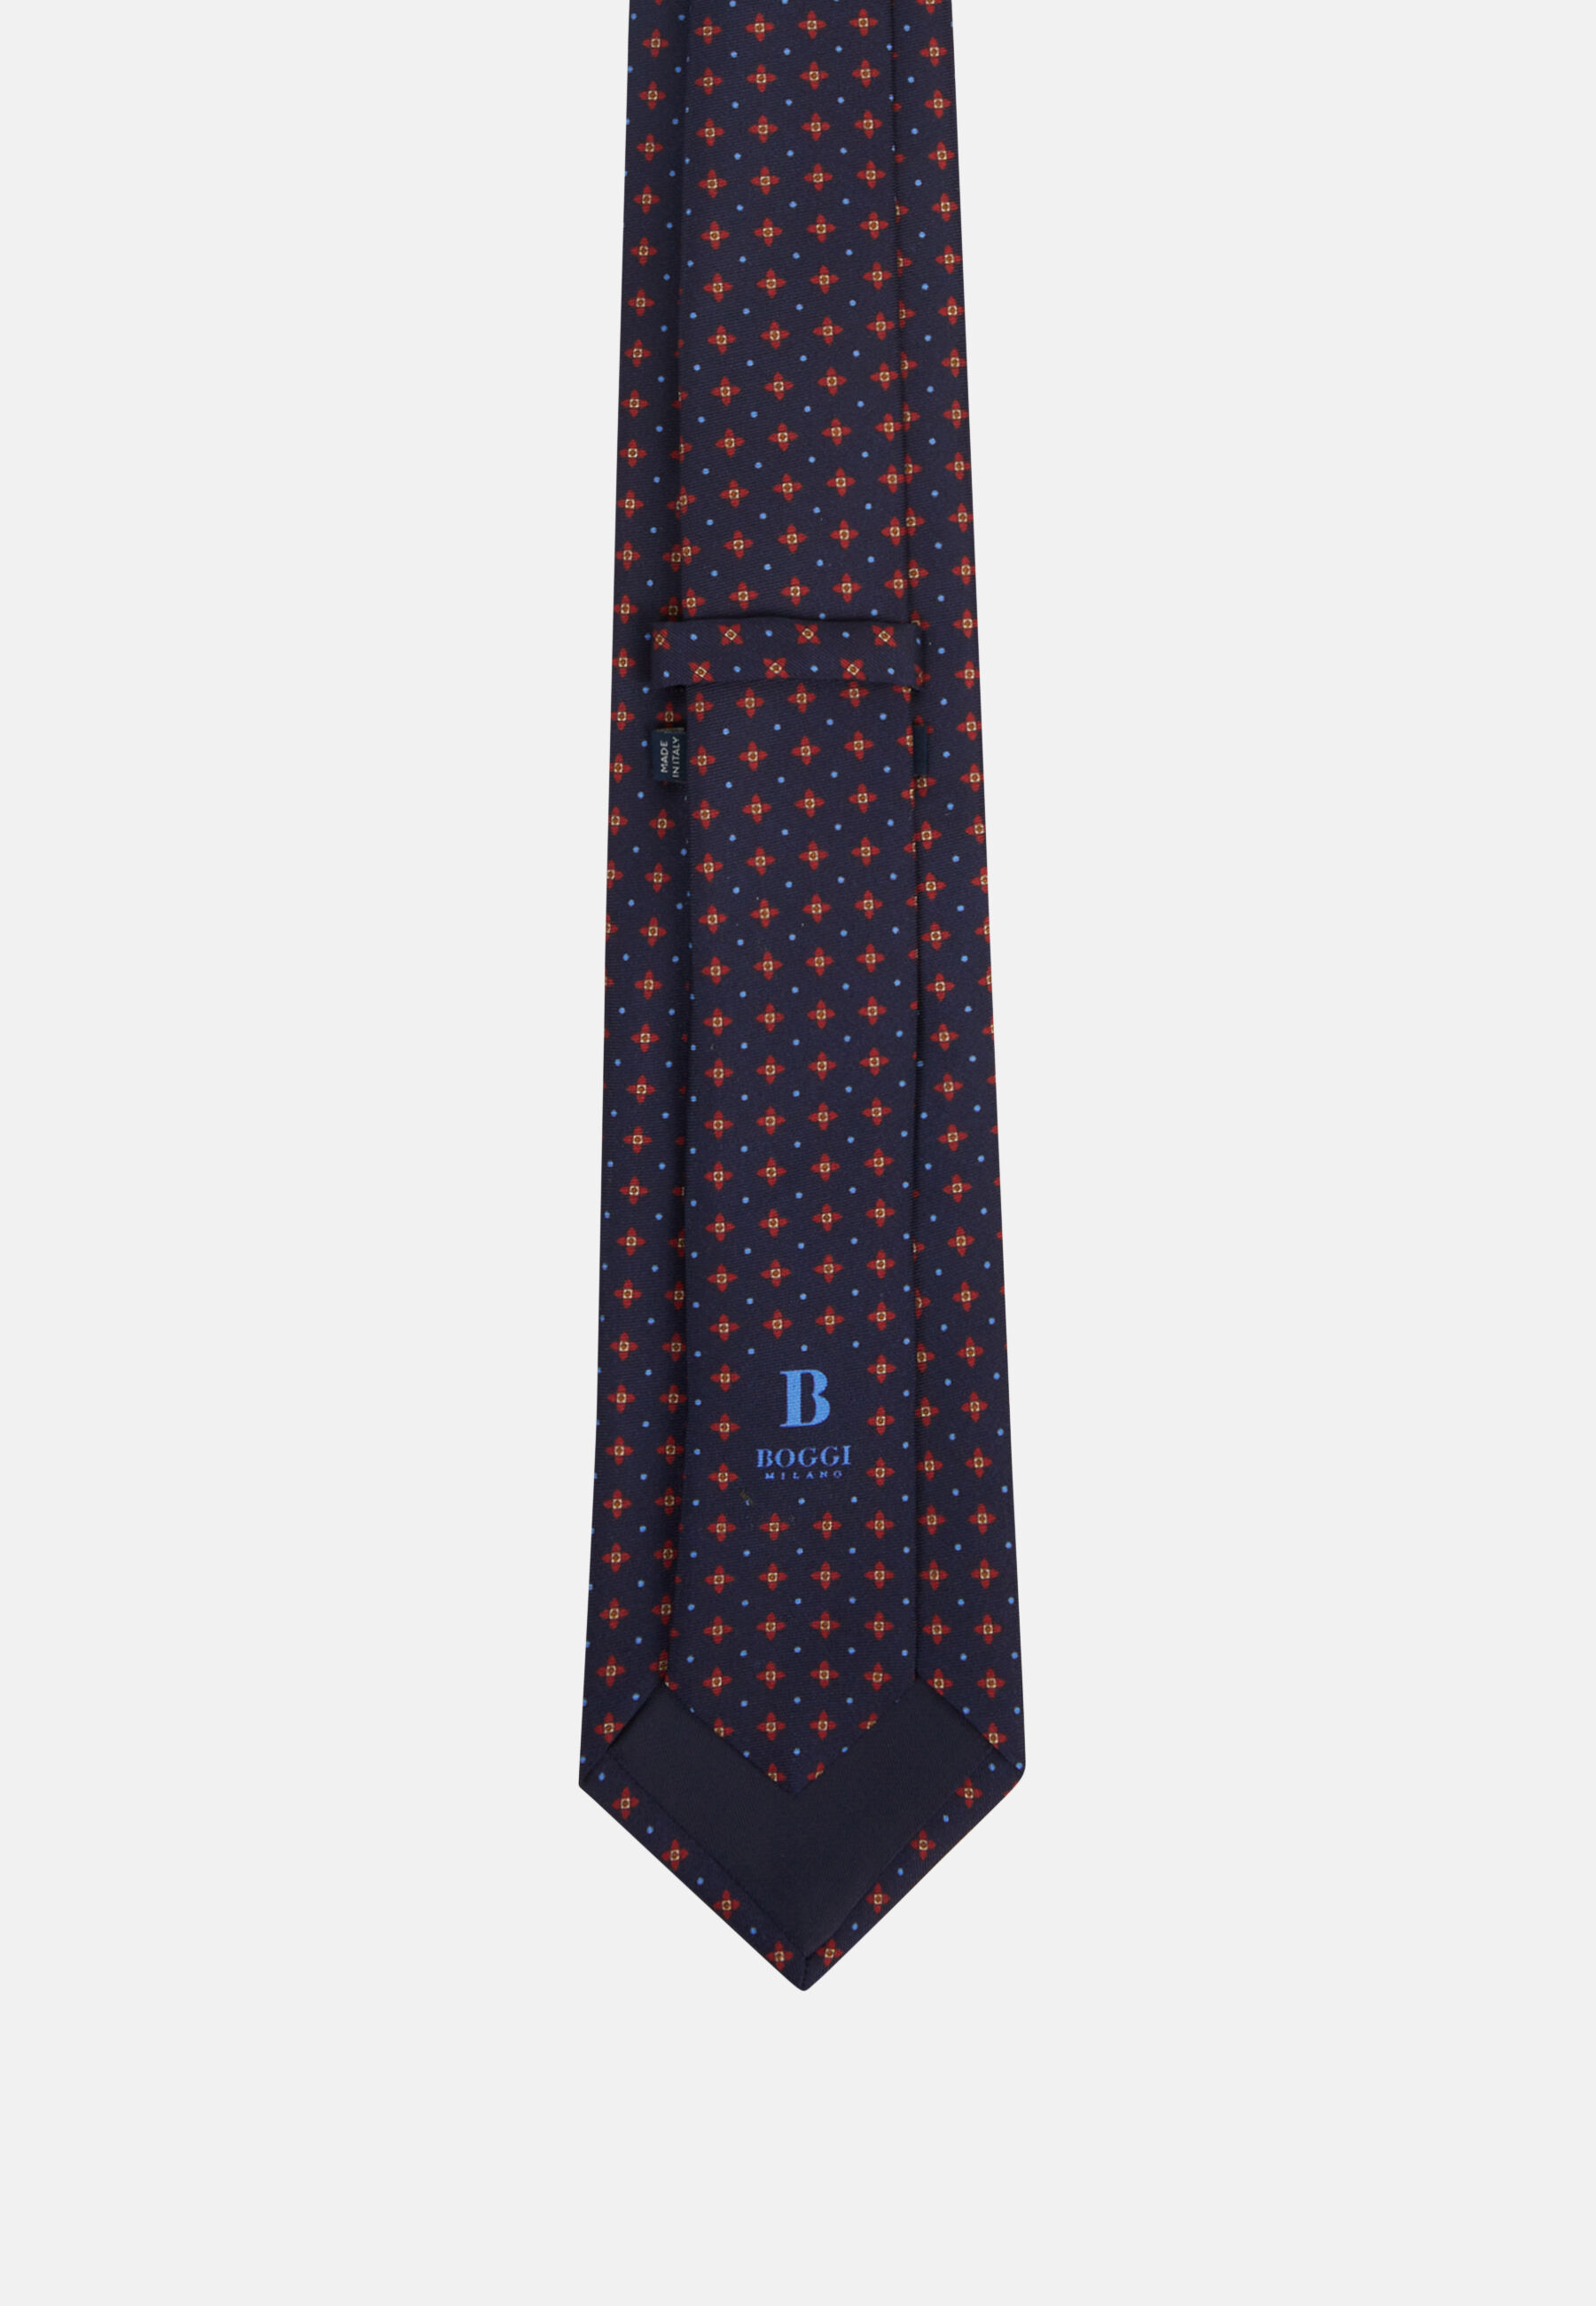 Cravatta Motivo Fiori In Seta Boggi Uomo Accessori Cravatte e accessori Cravatte 